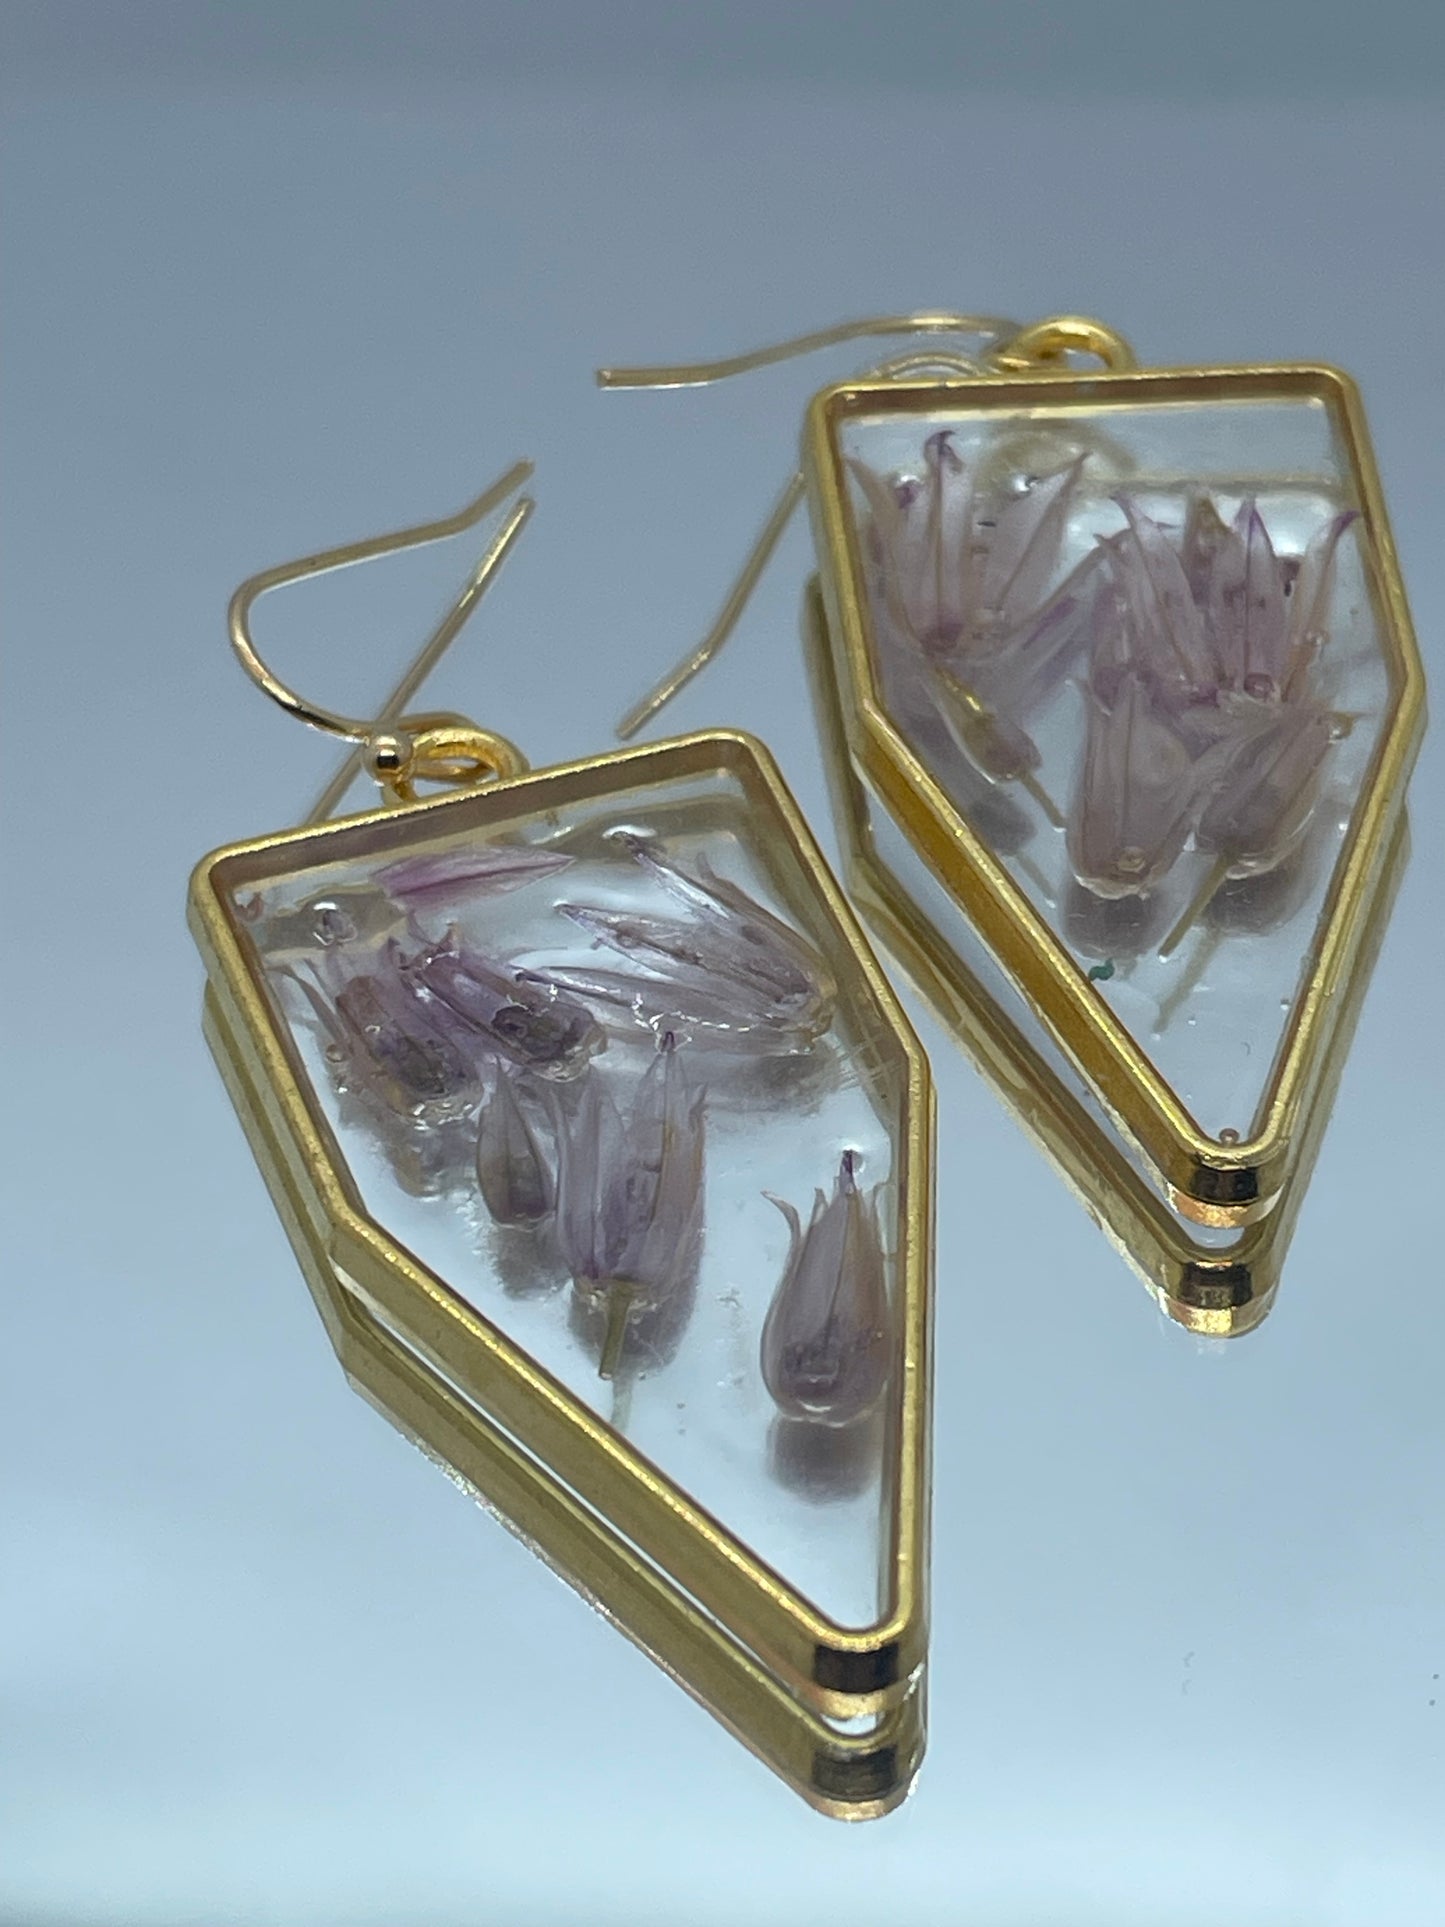 Chive & resin pentagon earrings